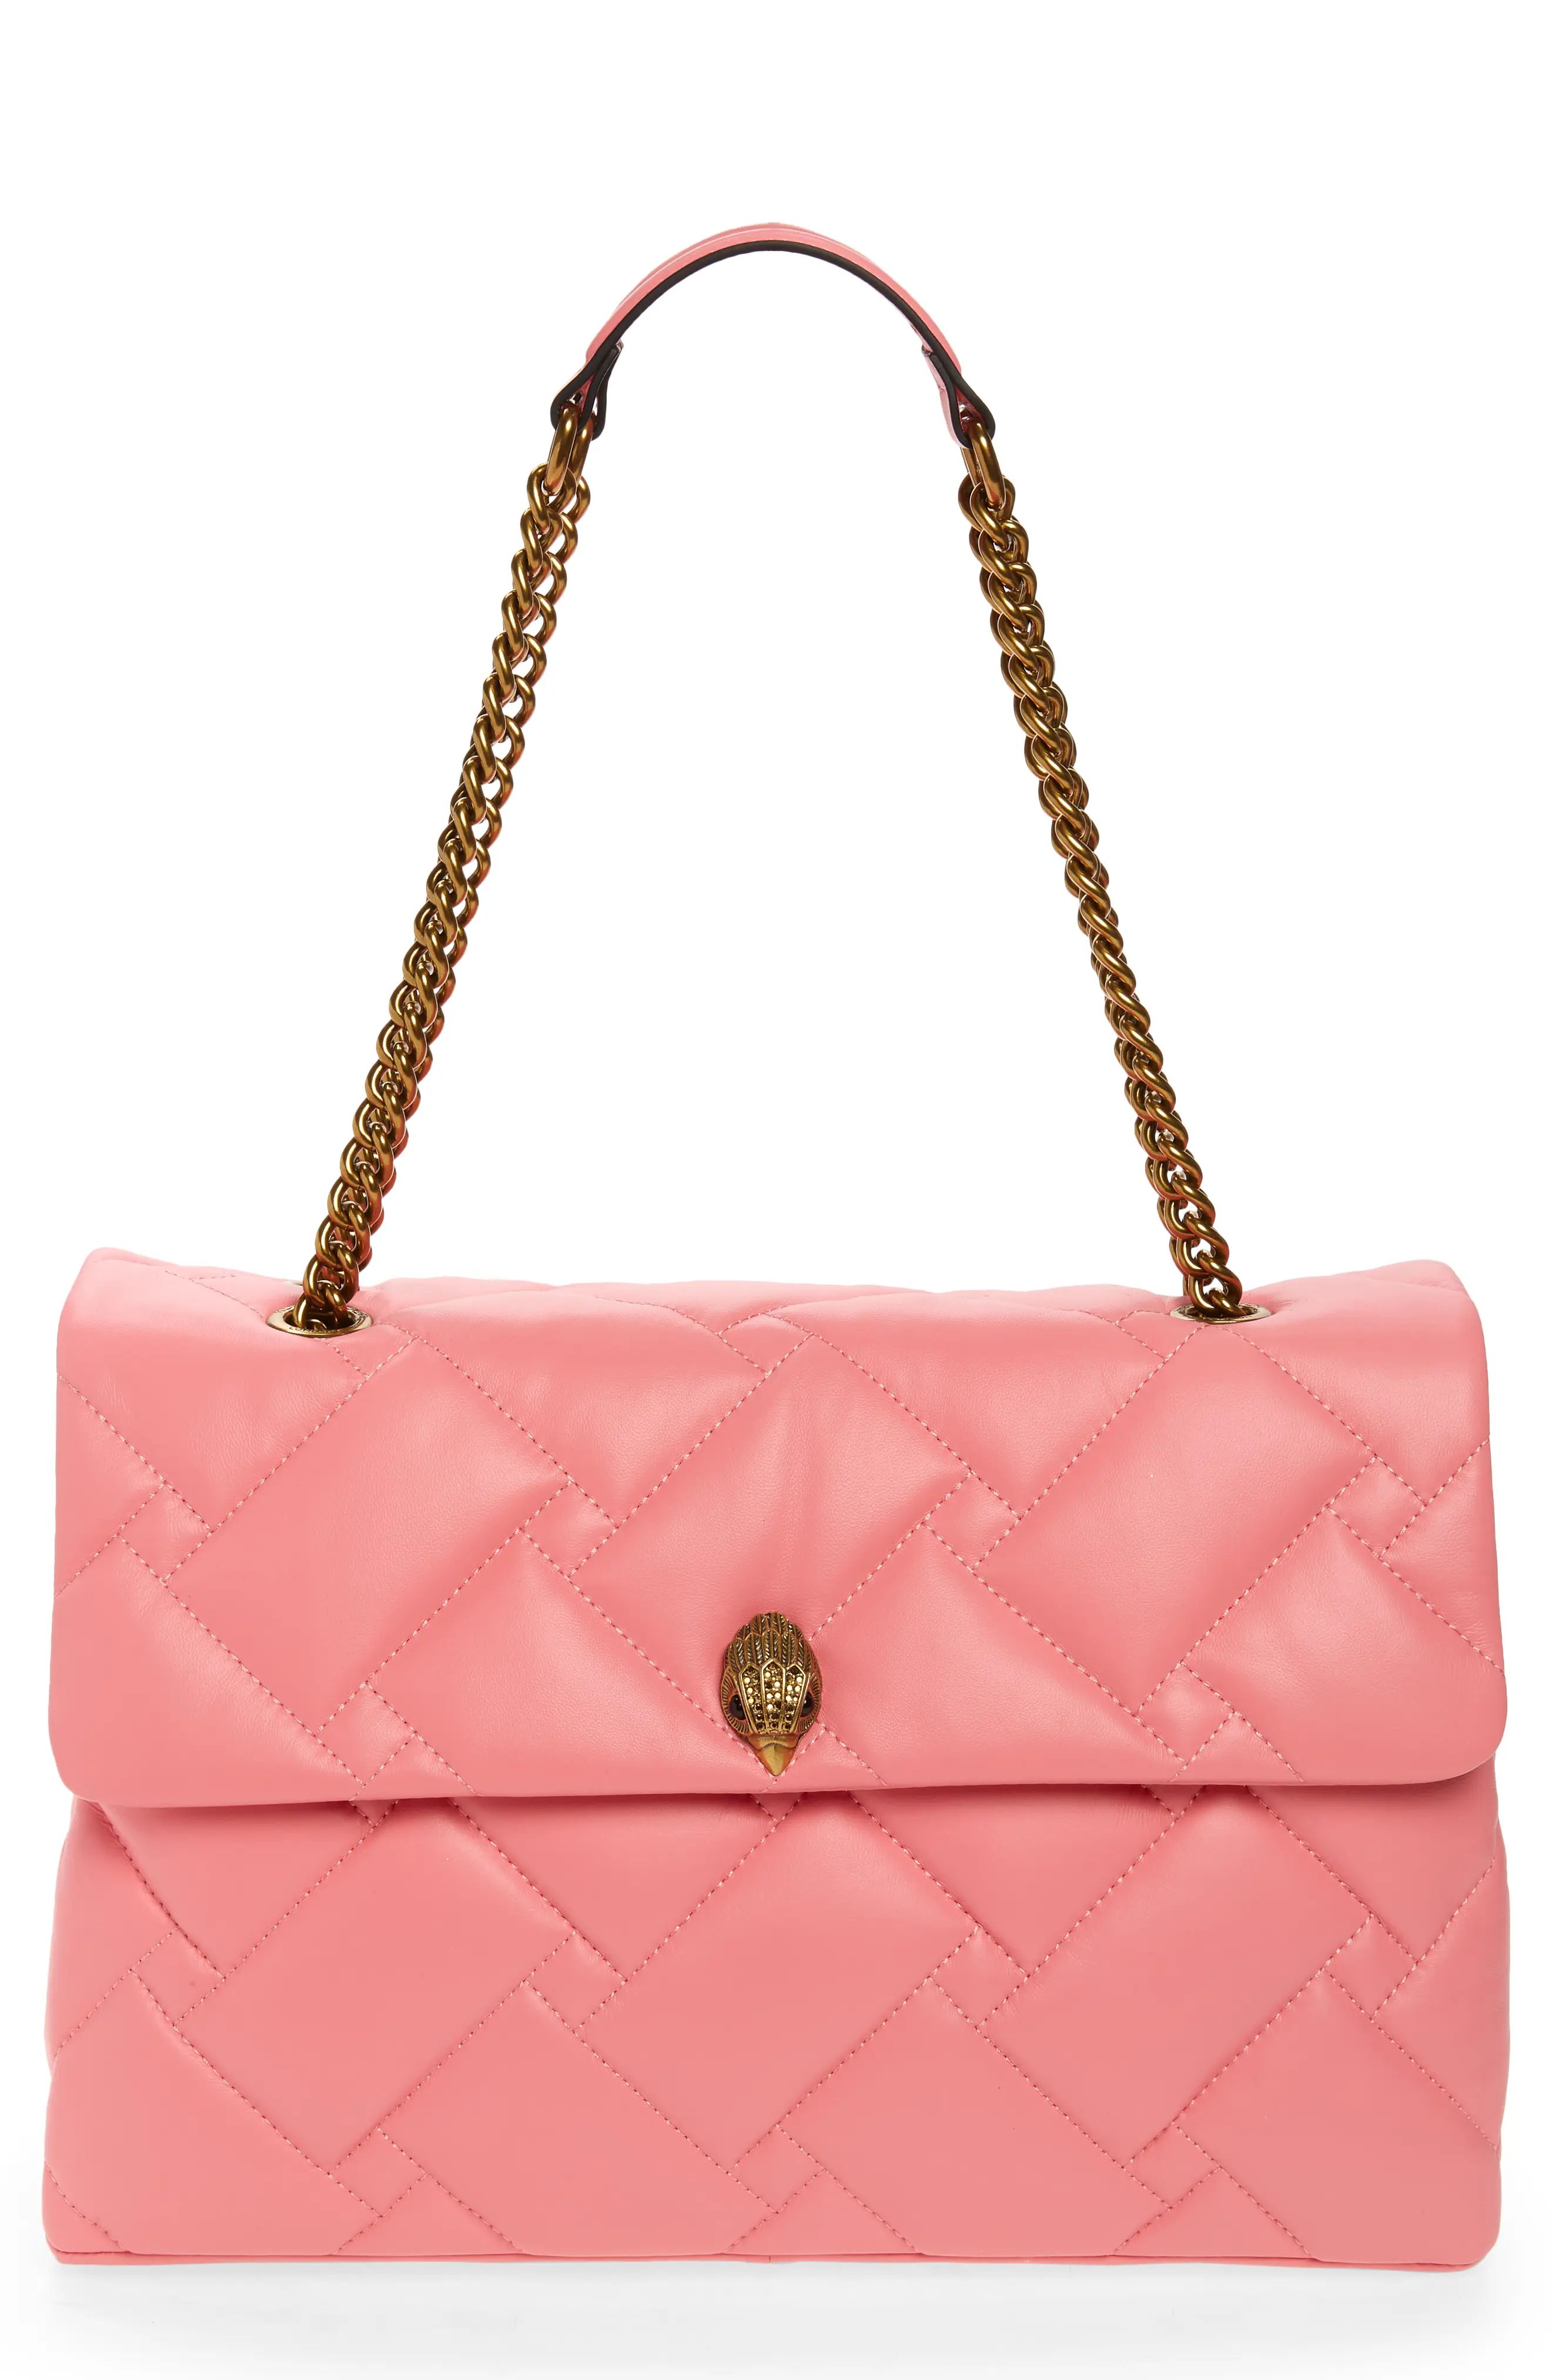 Kurt Geiger London XXL Kensington Soft Quilted Leather Shoulder Bag in Pink at Nordstrom | Nordstrom